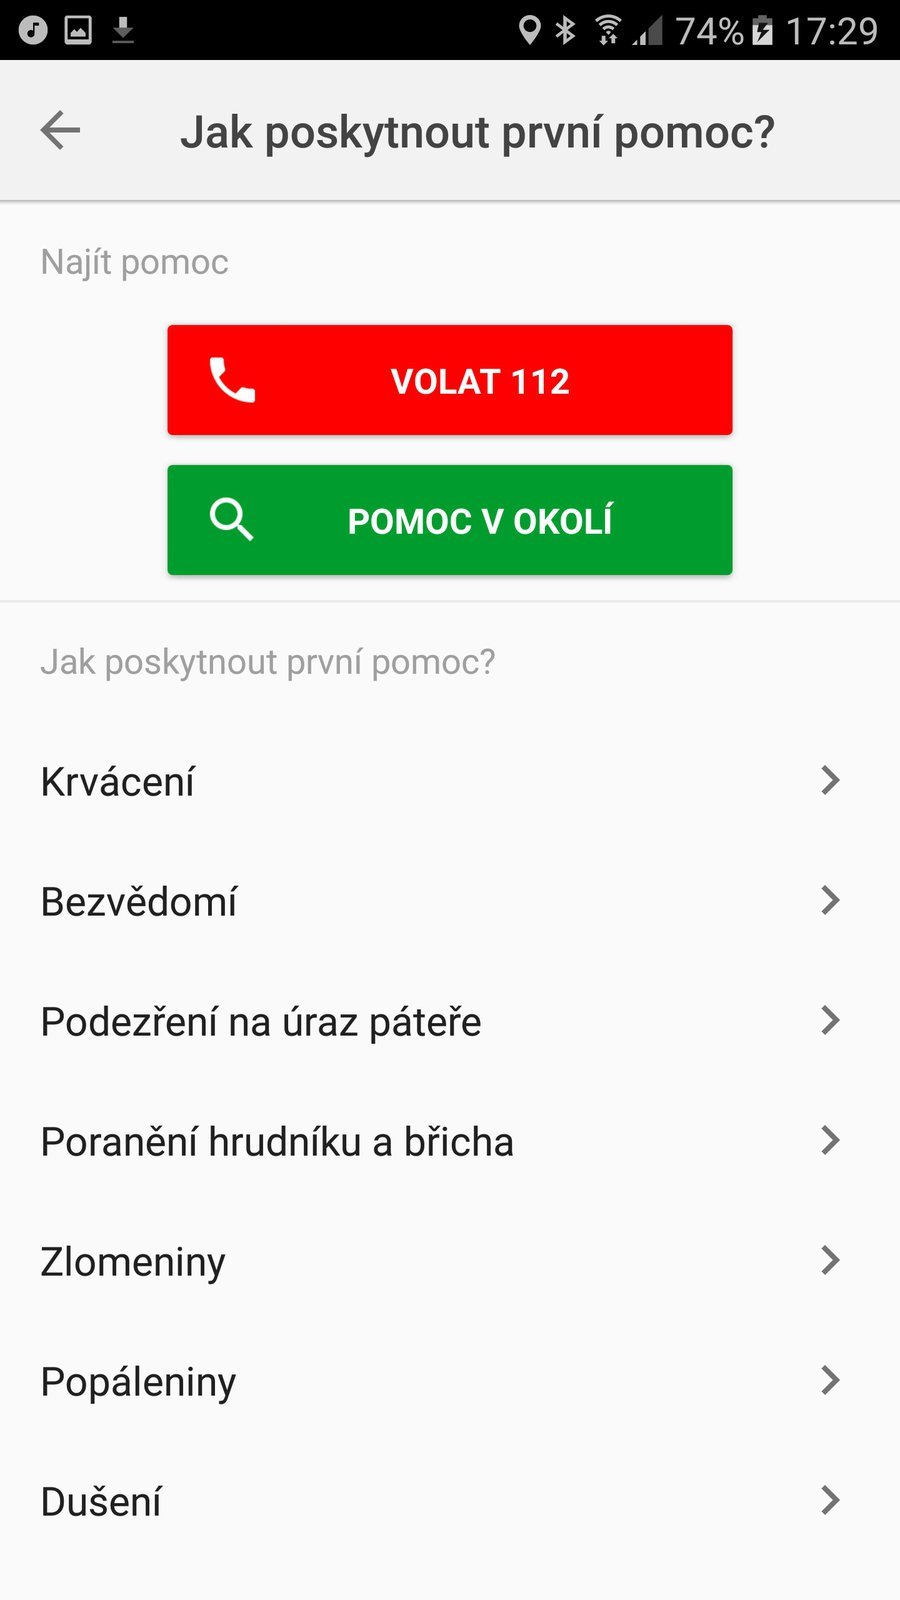 Mapy.cz přidávají červený kříž. Volají, navigují a pomohou s První pomocí